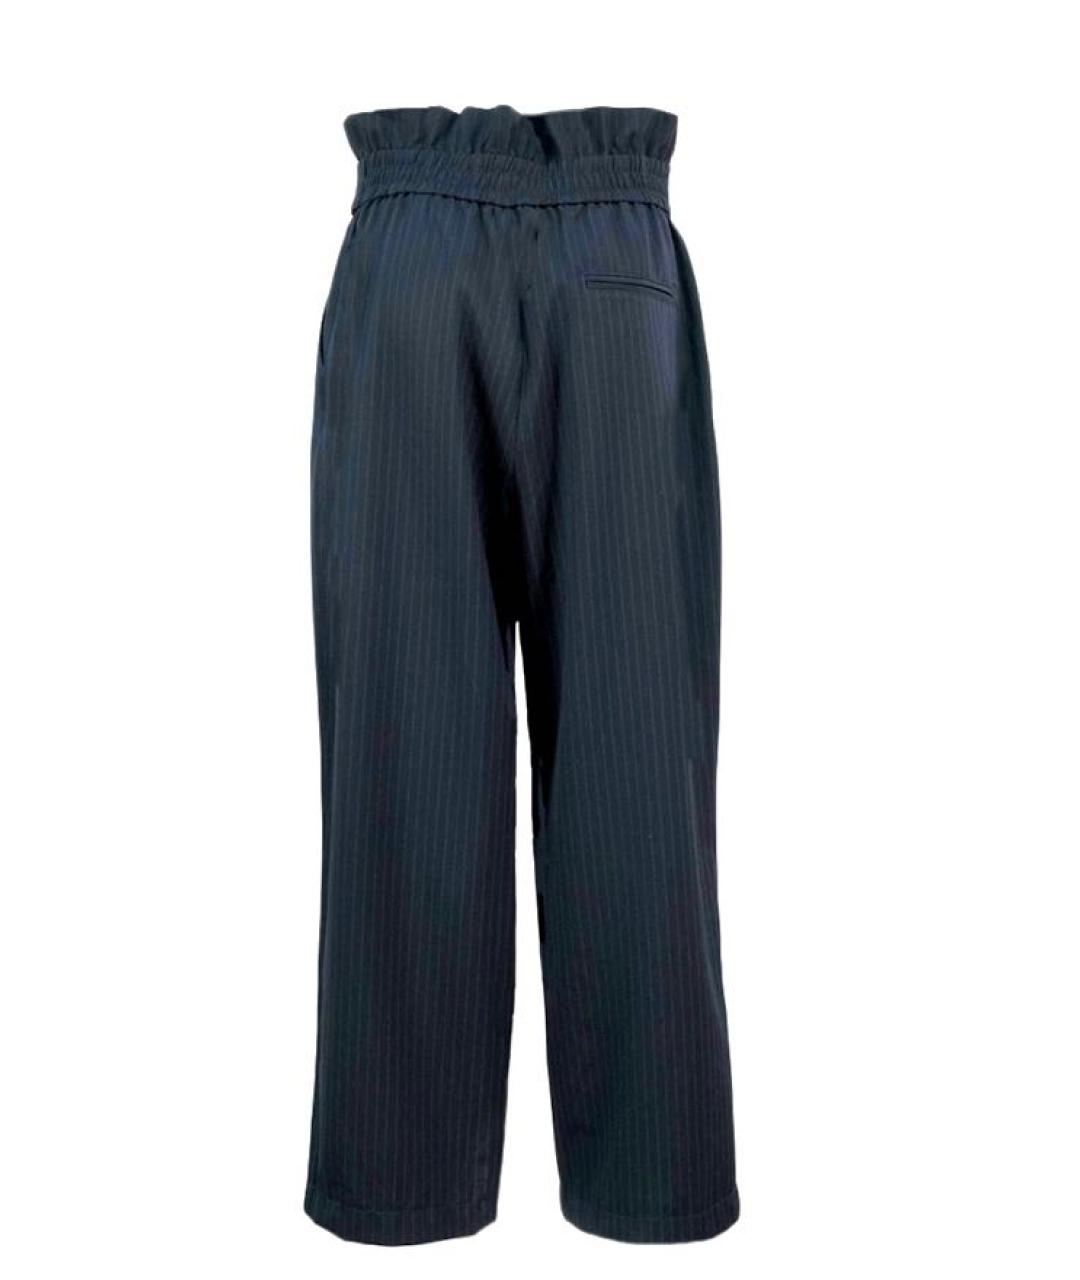 3.1 PHILLIP LIM Темно-синие брюки широкие, фото 2